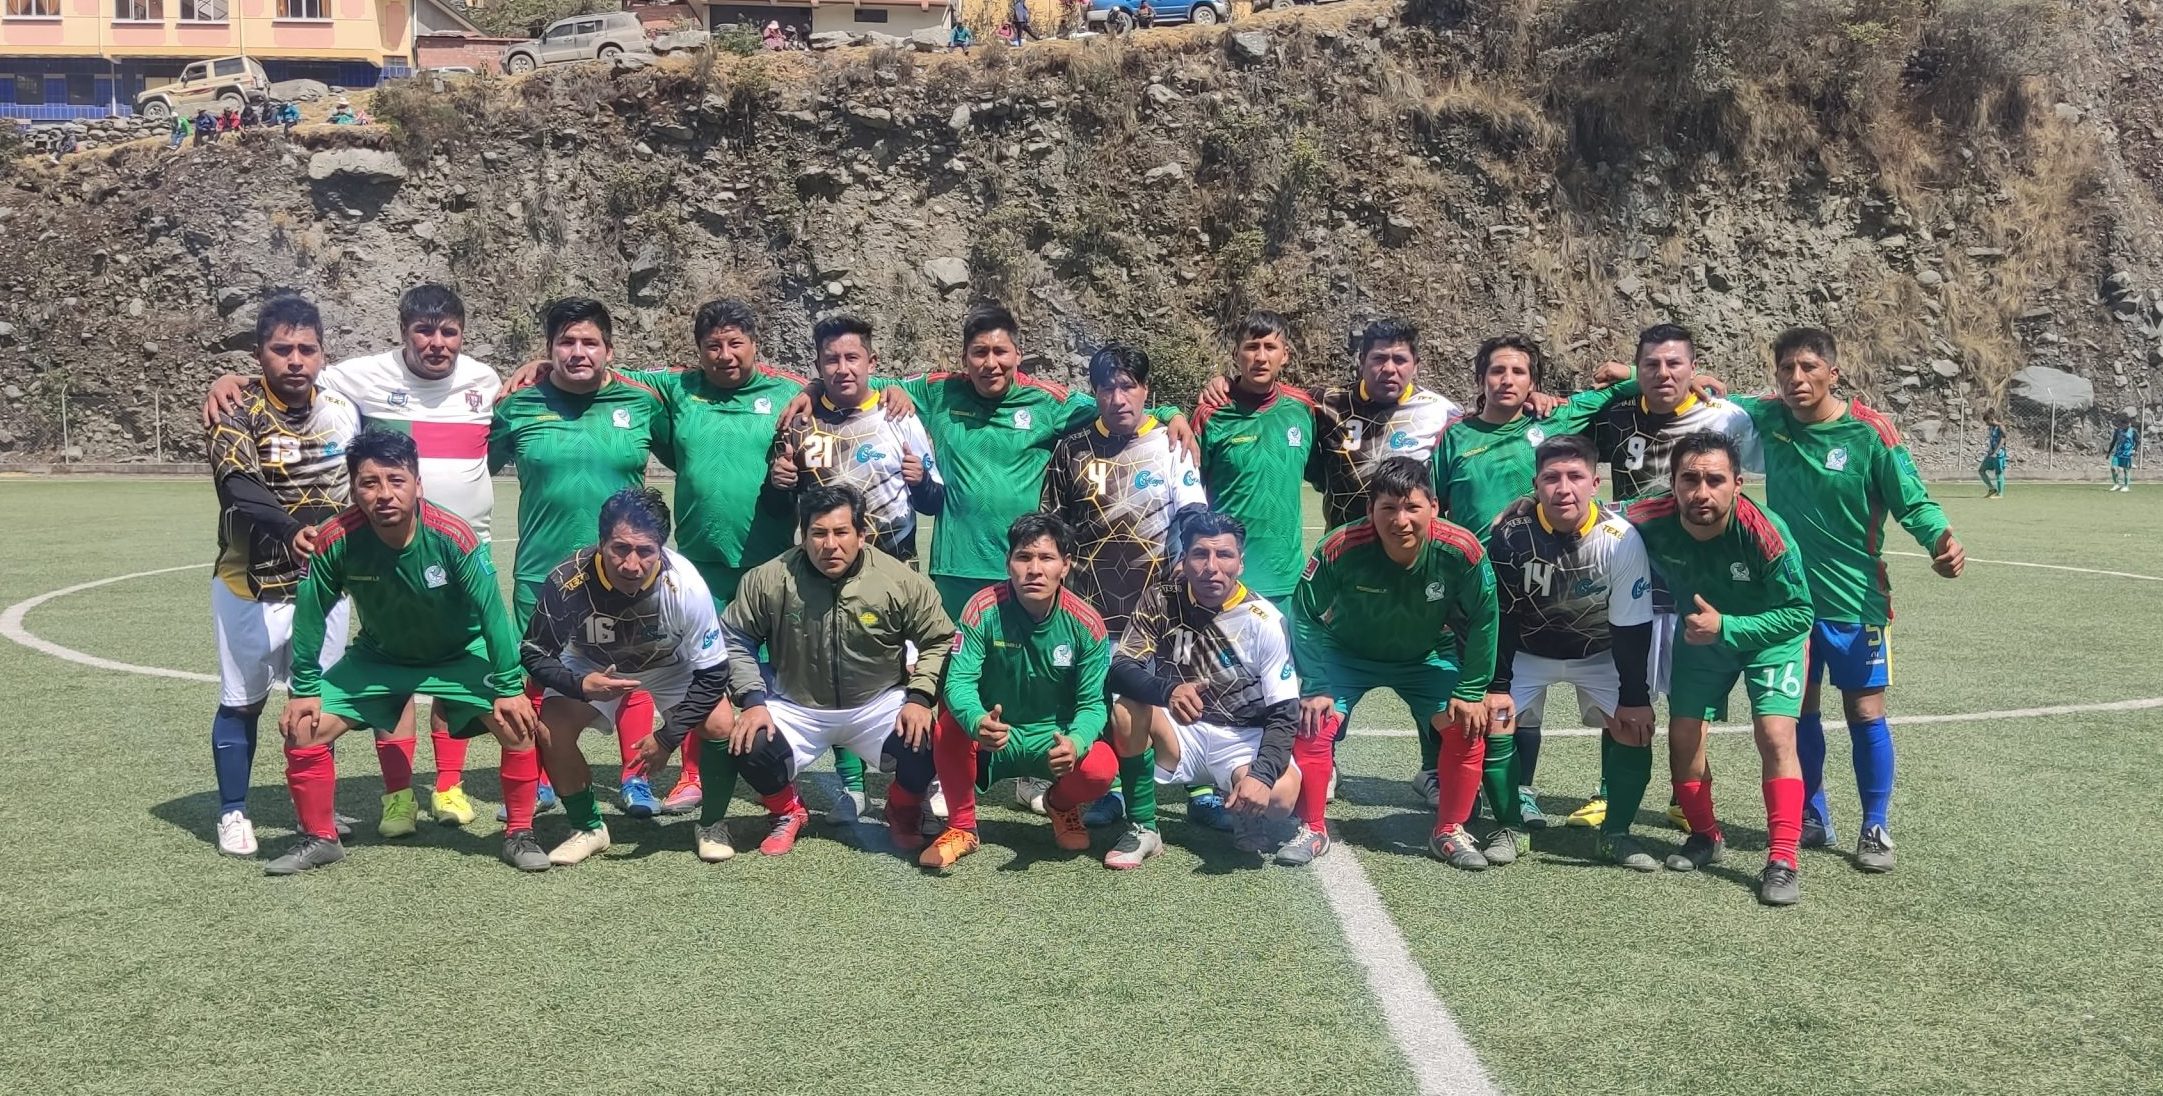 Campeonato de Futbol de la Central de Cooperativas Mineras Auríferas «Yani Liguata» R.L.